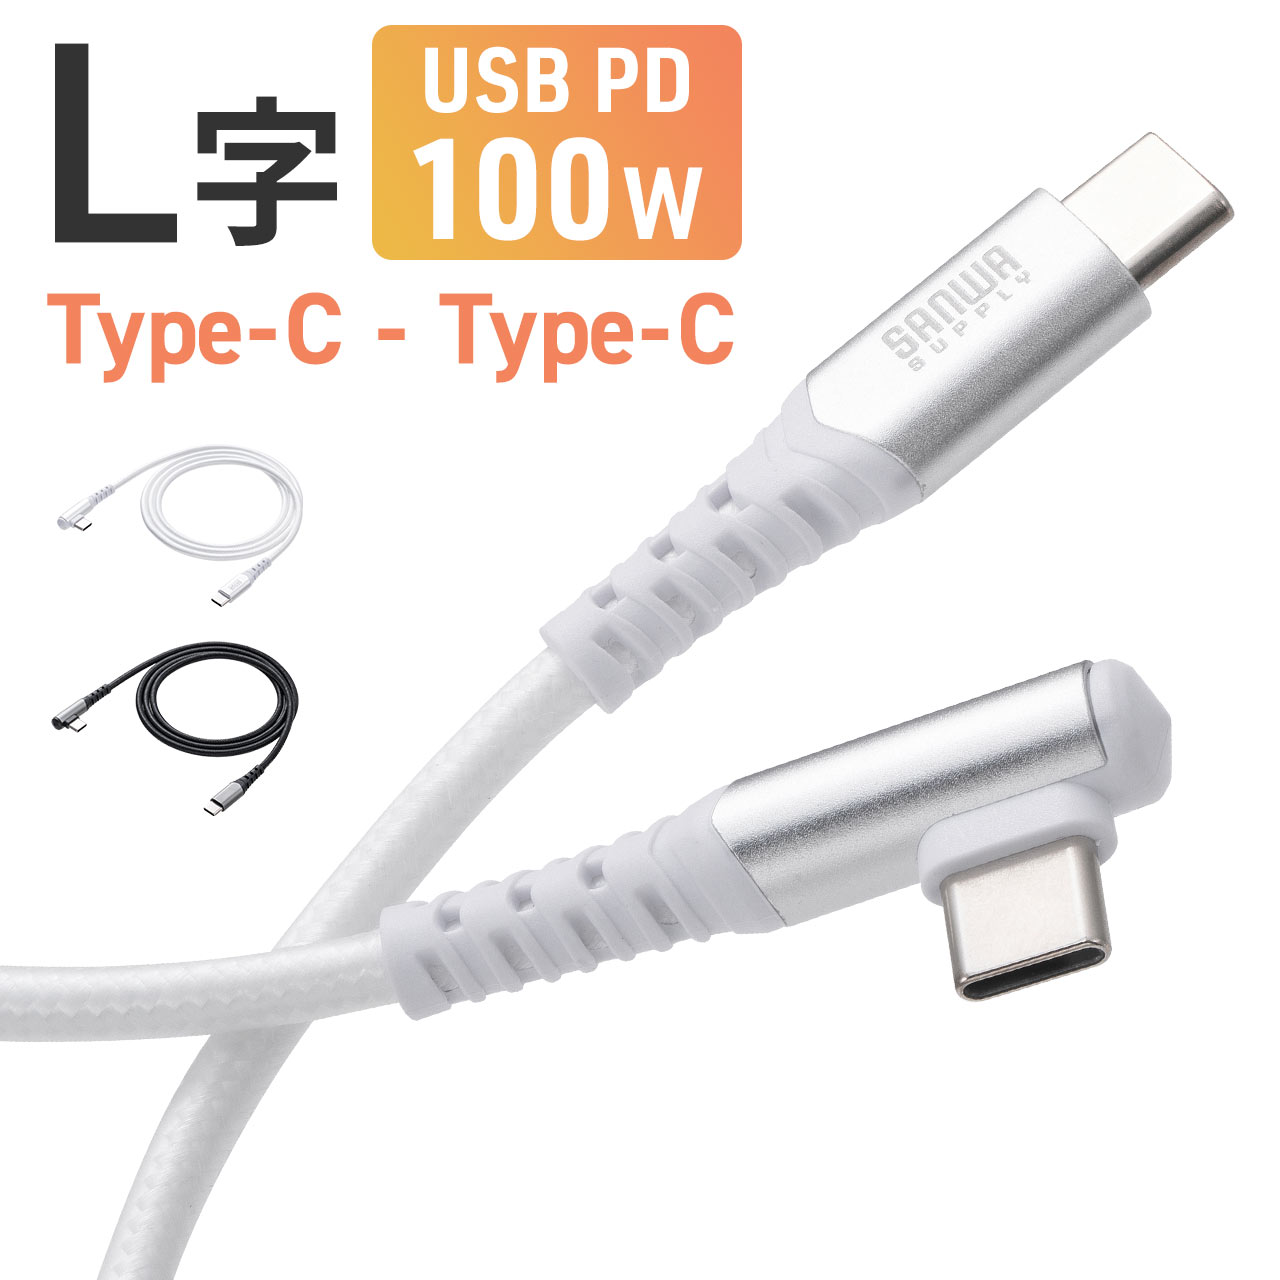 USB Type-C ケーブル L字 USB PD100W シリコンメッシュ 絡まない からみにくい CtoC タイプC USB2.0 充電 データ転送 スマホ タブレット 1m 500-USB079